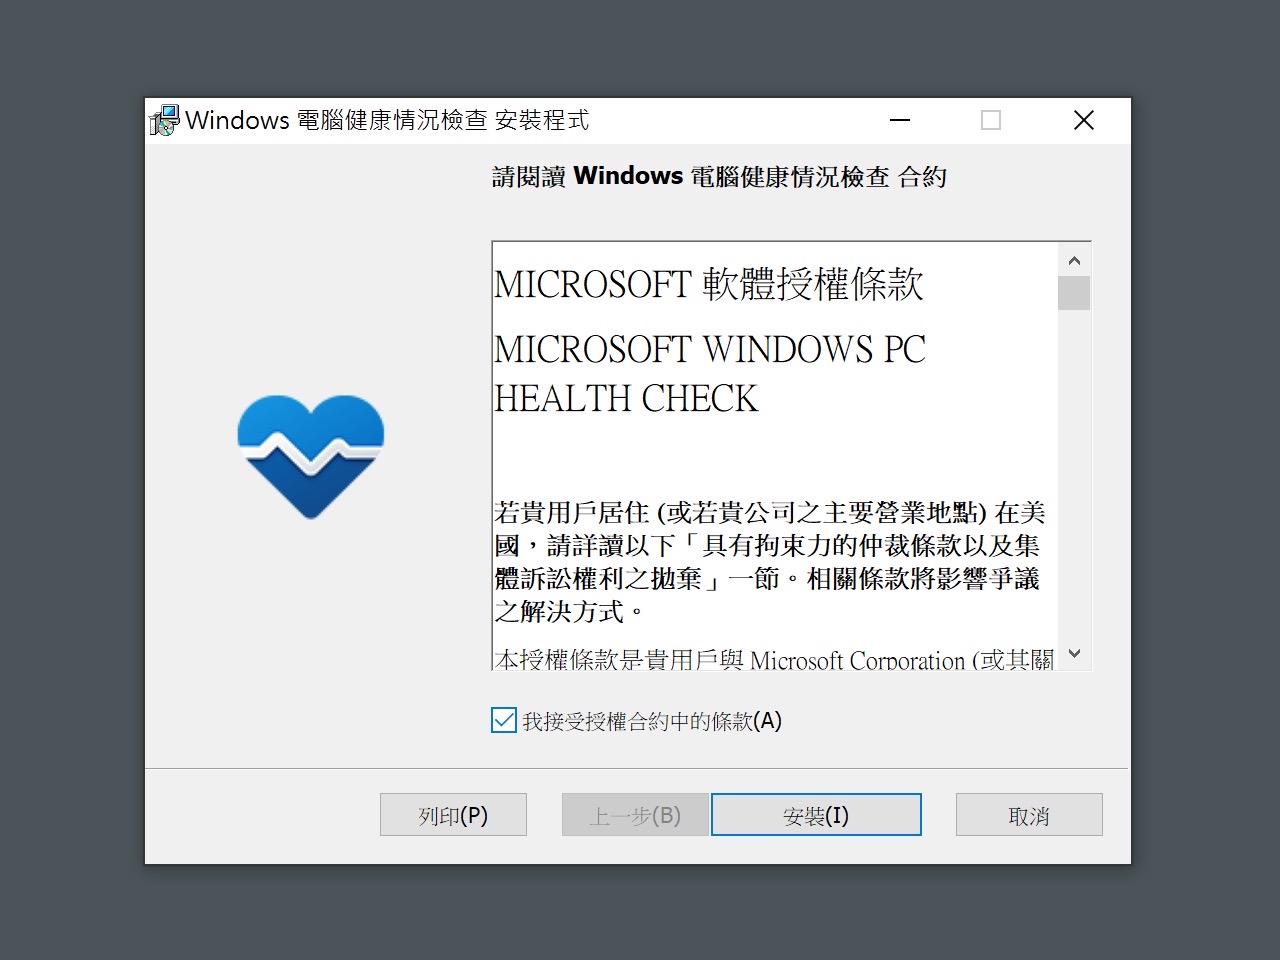 符合系統需求免費升級 Windows 11，使用「電腦健康情況檢查」即可檢查